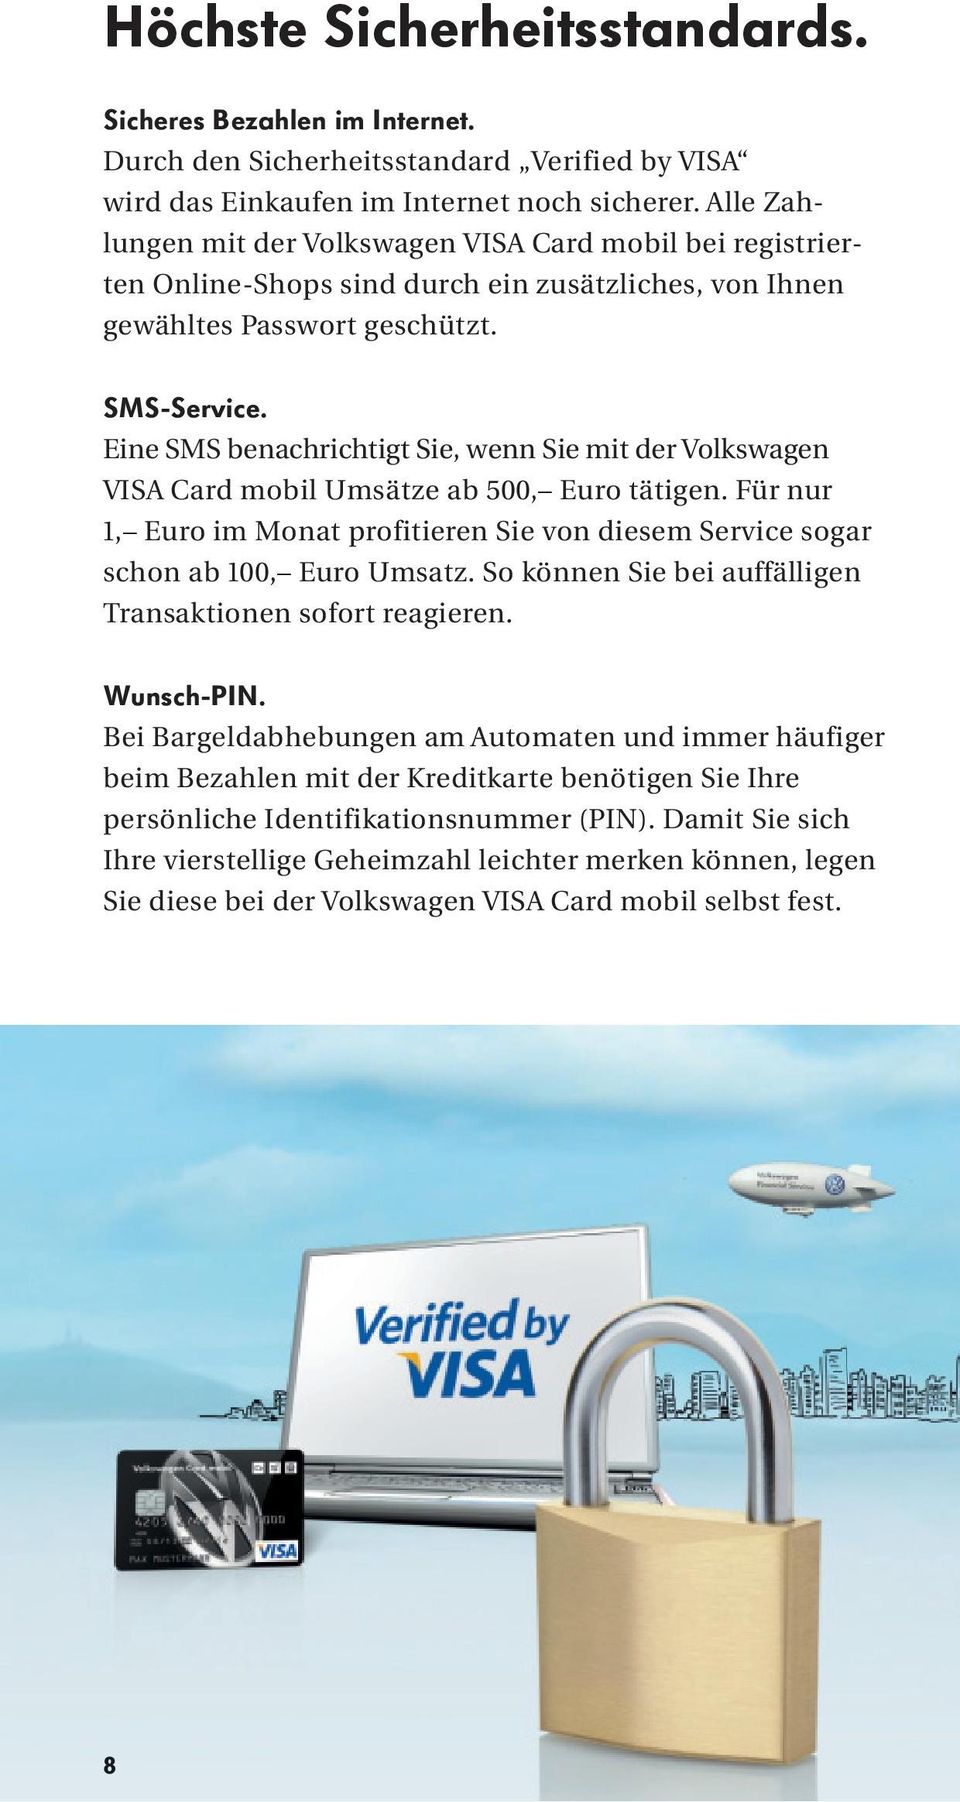 Eine SMS benachrichtigt Sie, wenn Sie mit der Volkswagen VISA Card mobil Umsätze ab 500, Euro tätigen. Für nur 1, Euro im Monat profitieren Sie von diesem Service sogar schon ab 100, Euro Umsatz.